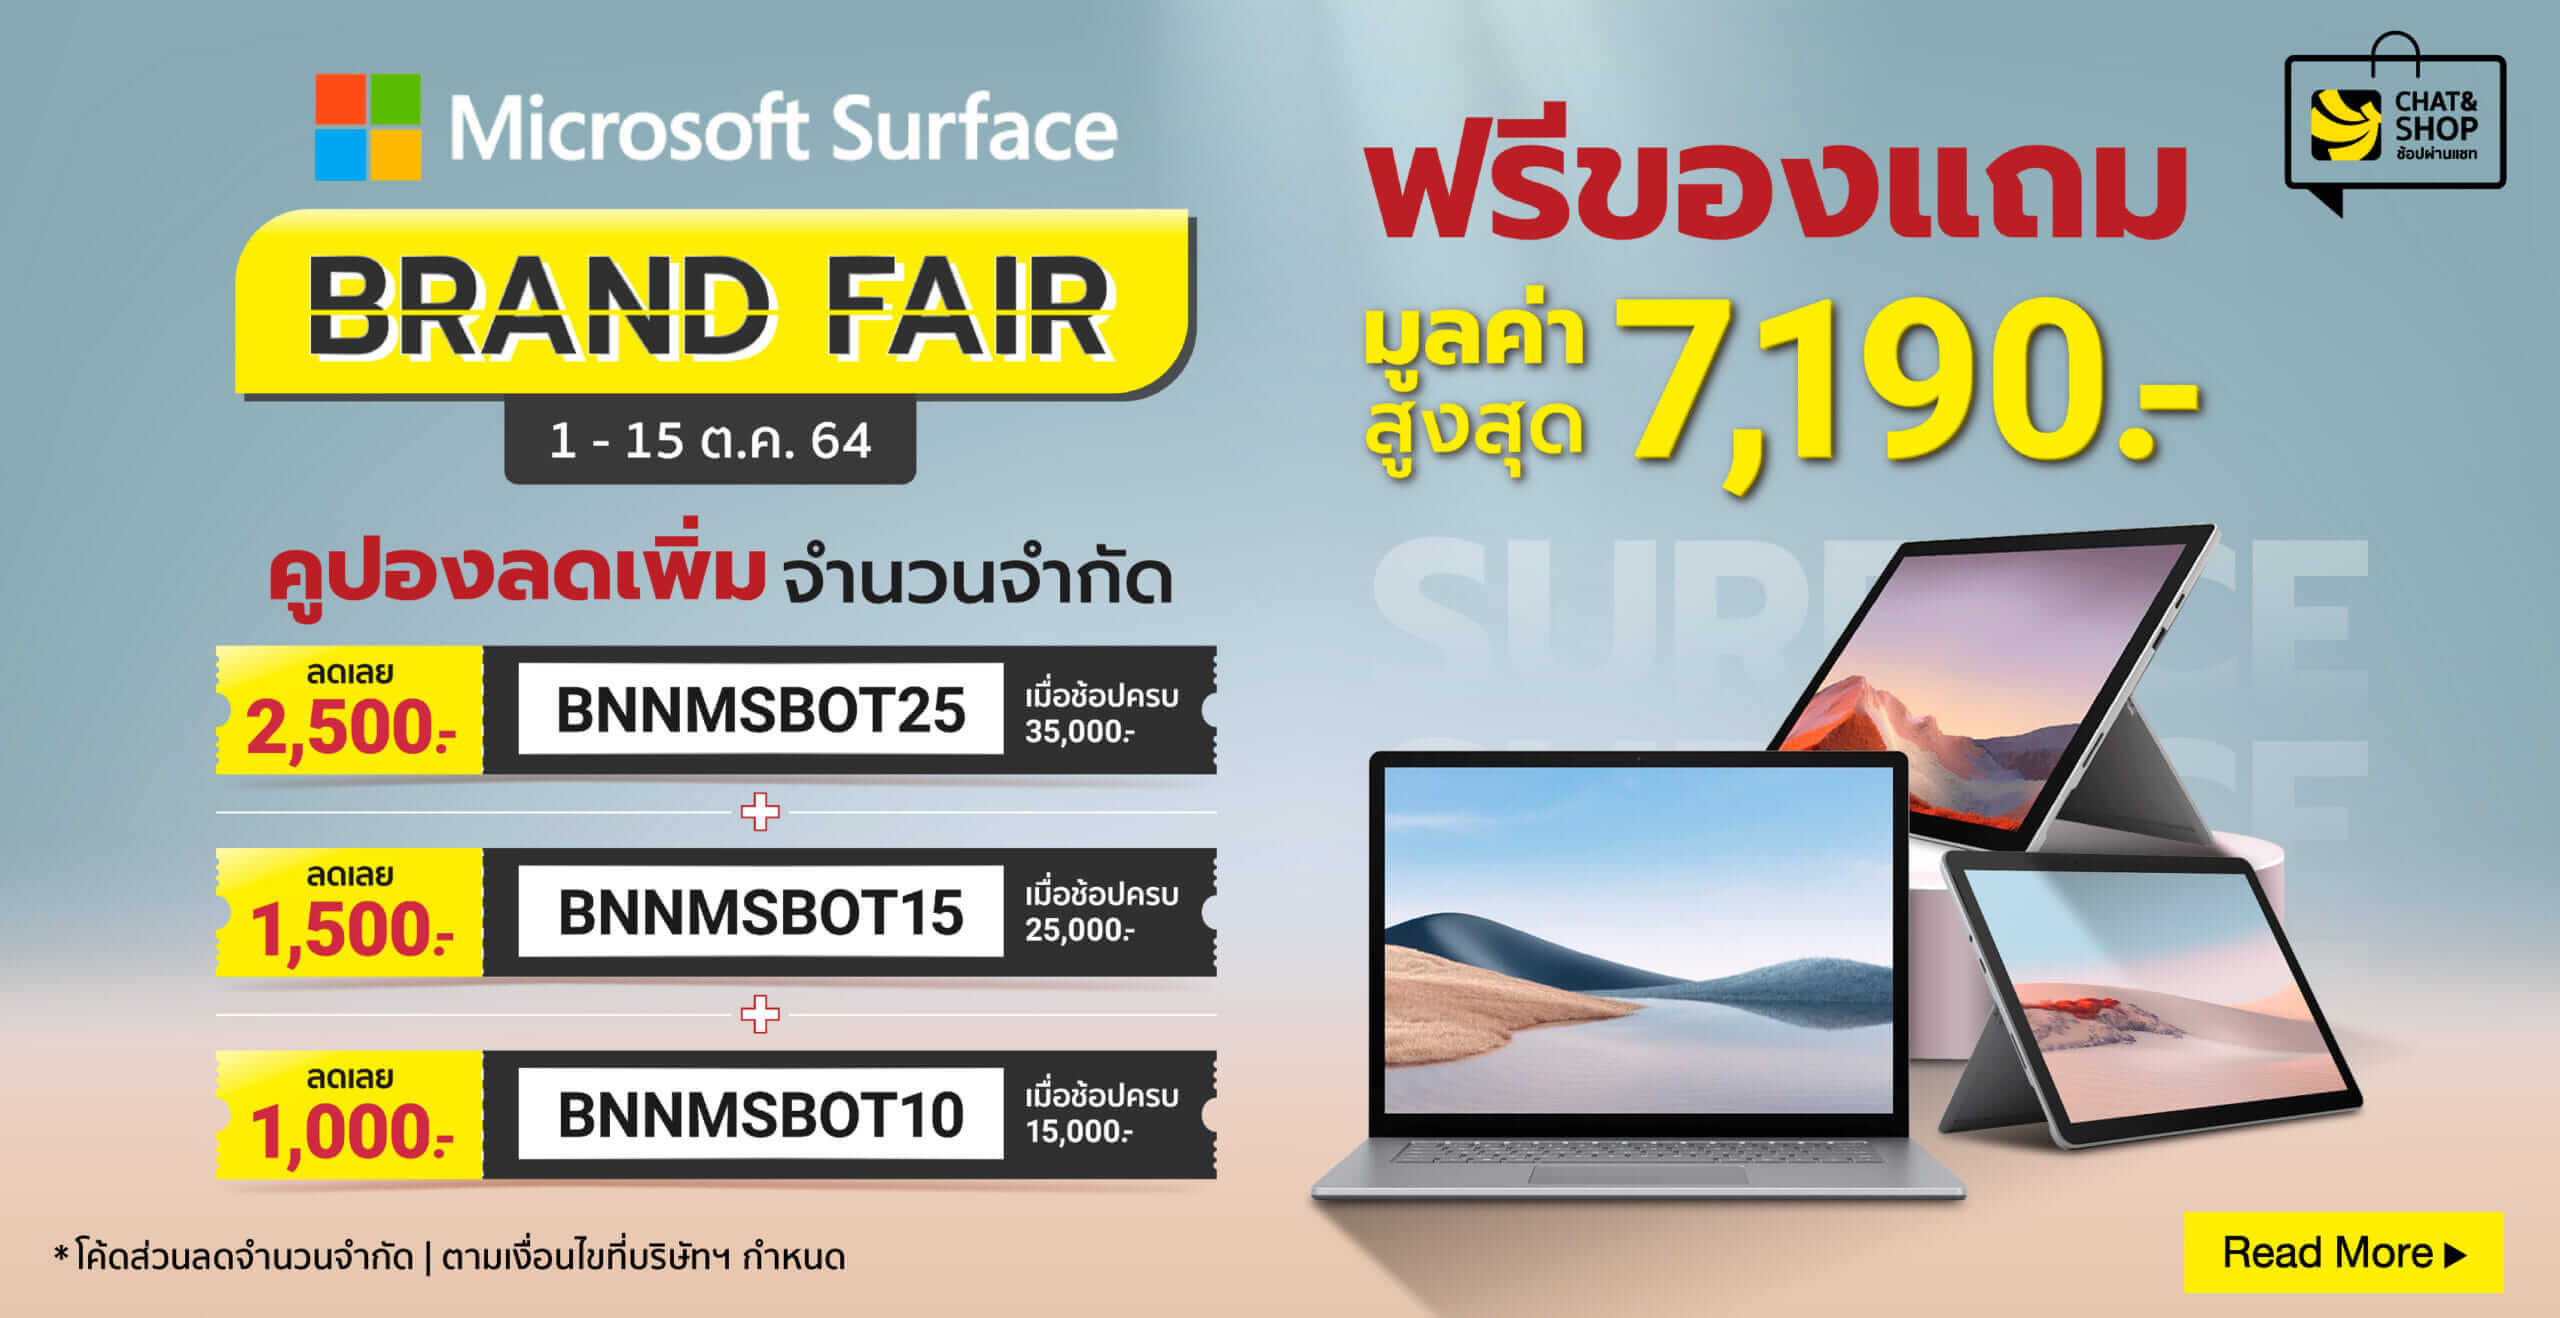 Microsoft Surface Brand Fair